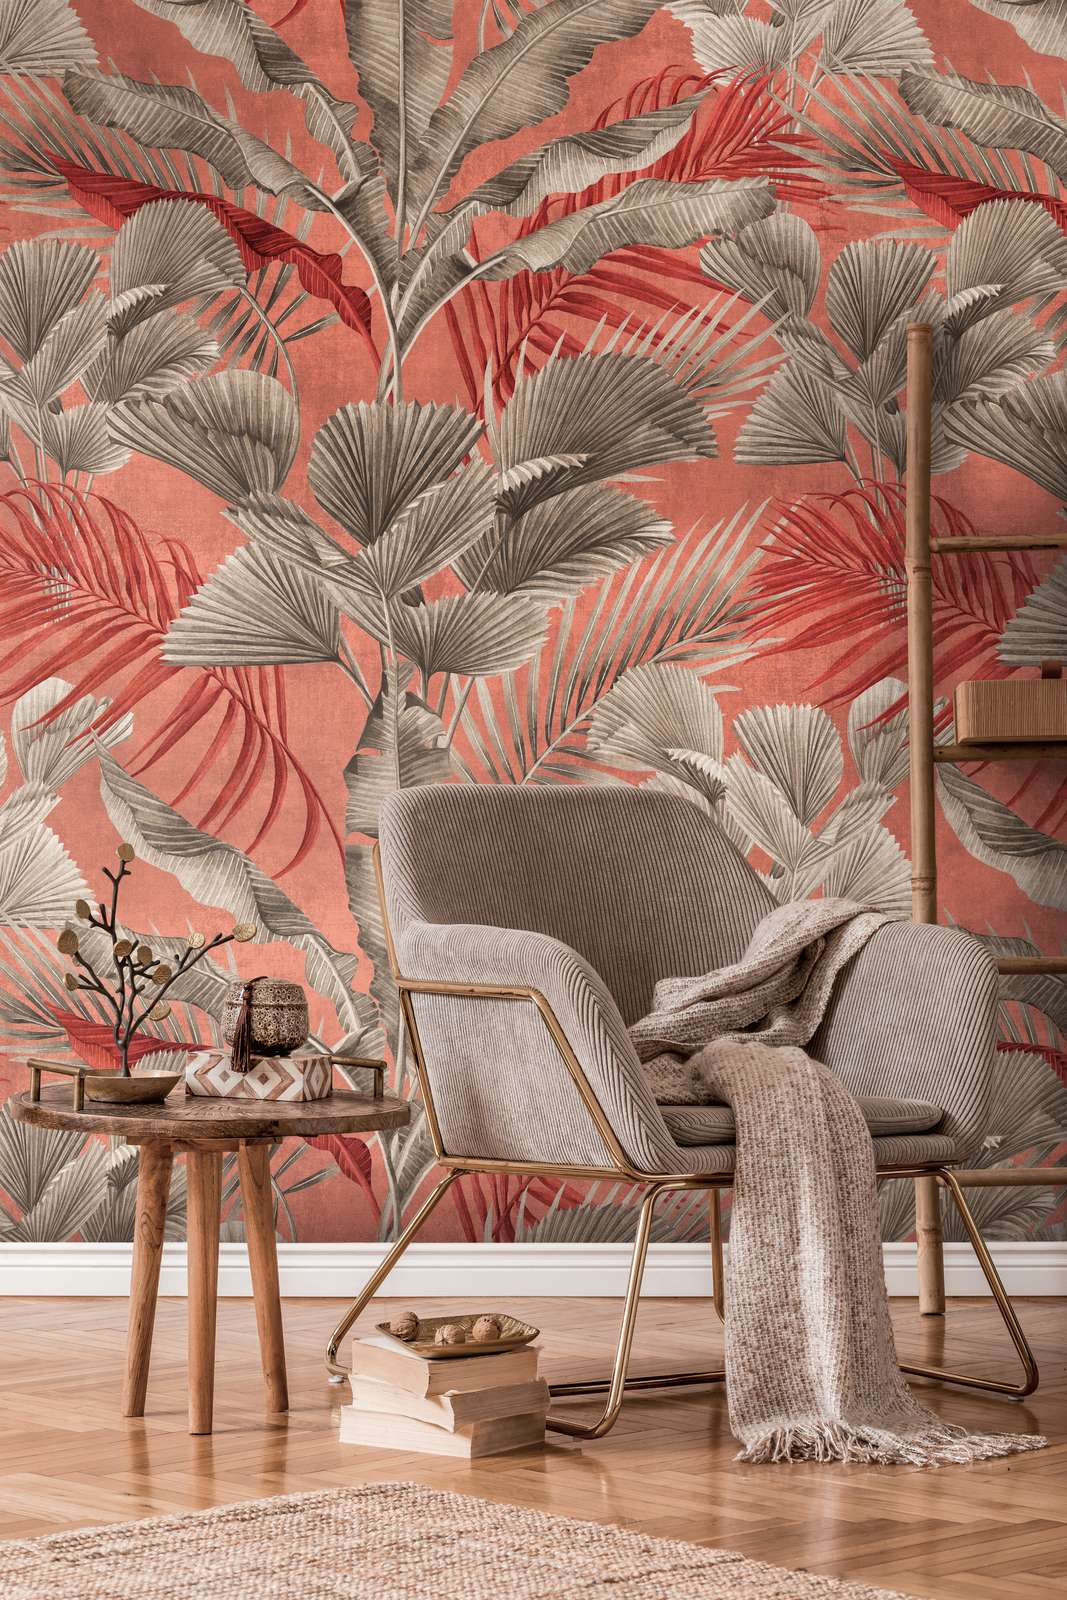             Papier peint jungle avec plantes tropicales - rose, rouge, gris
        